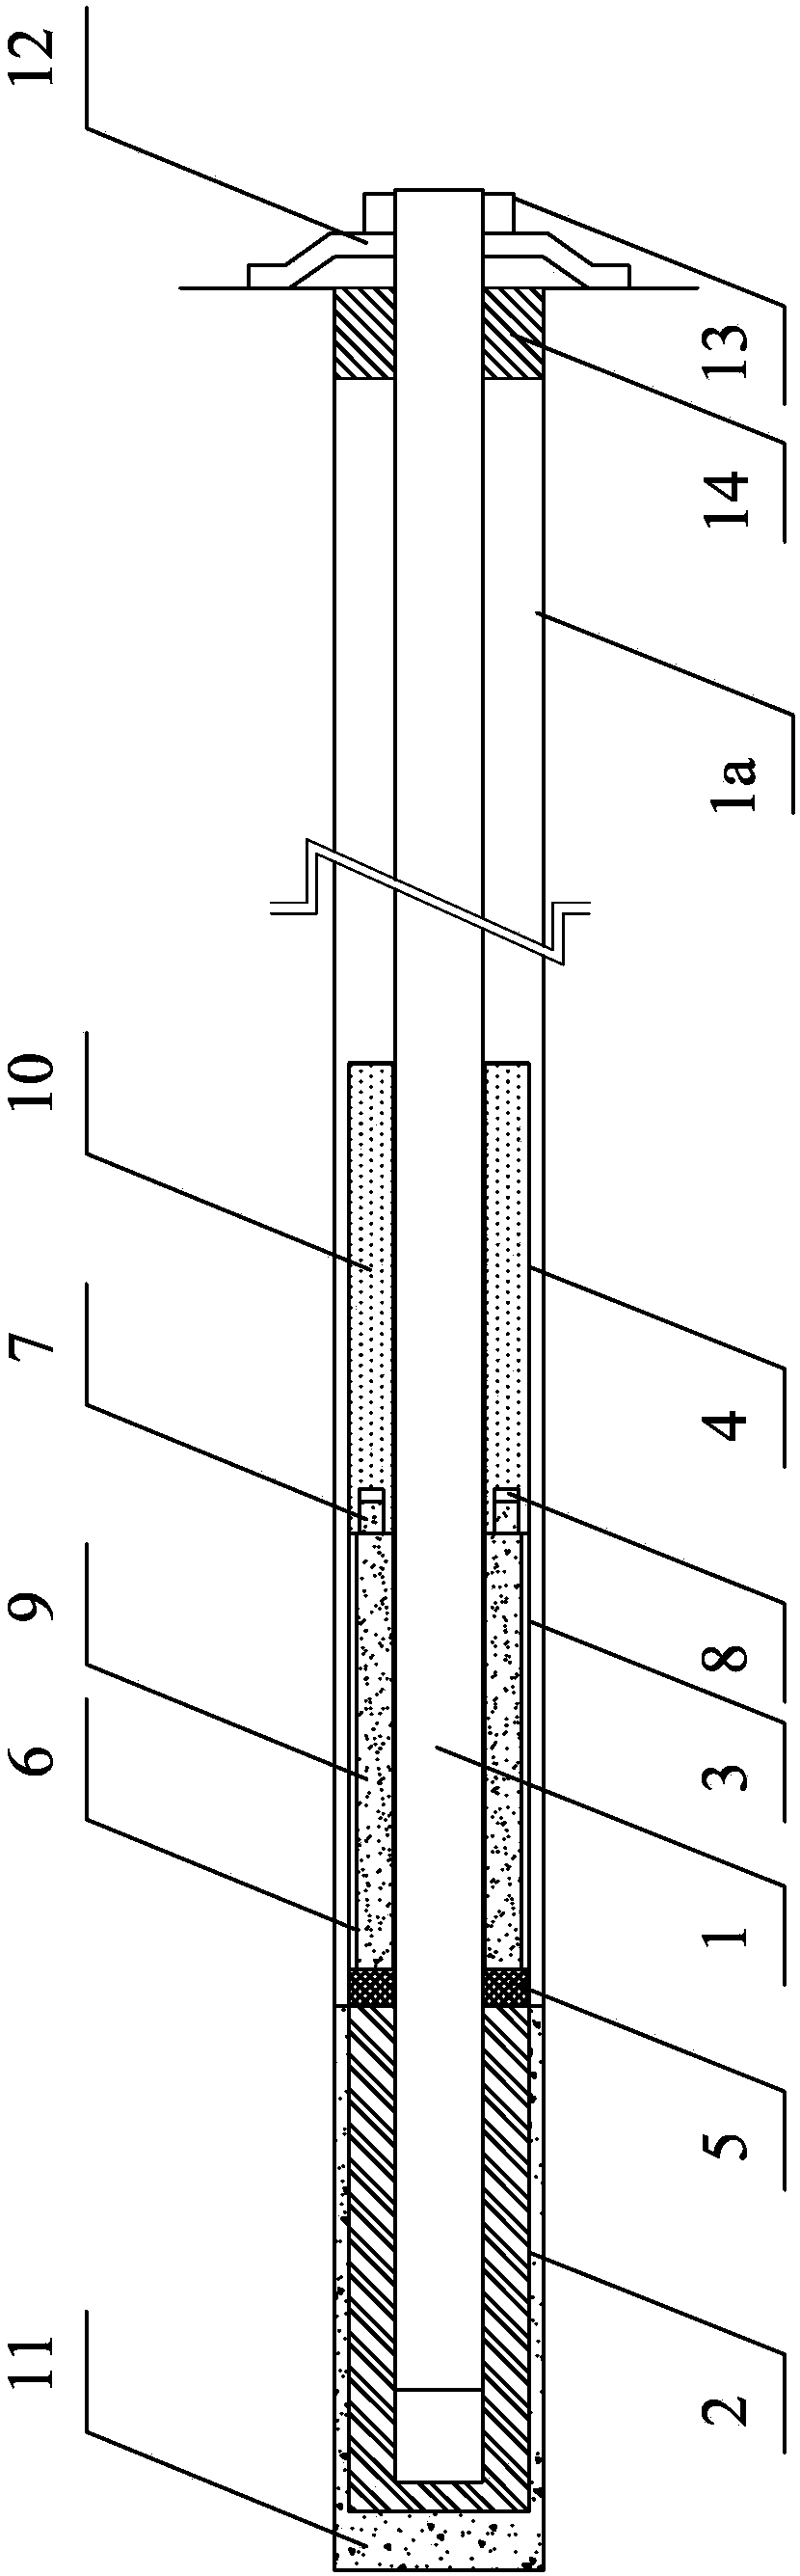 A large deformation self-repairing rockburst resistant bolt